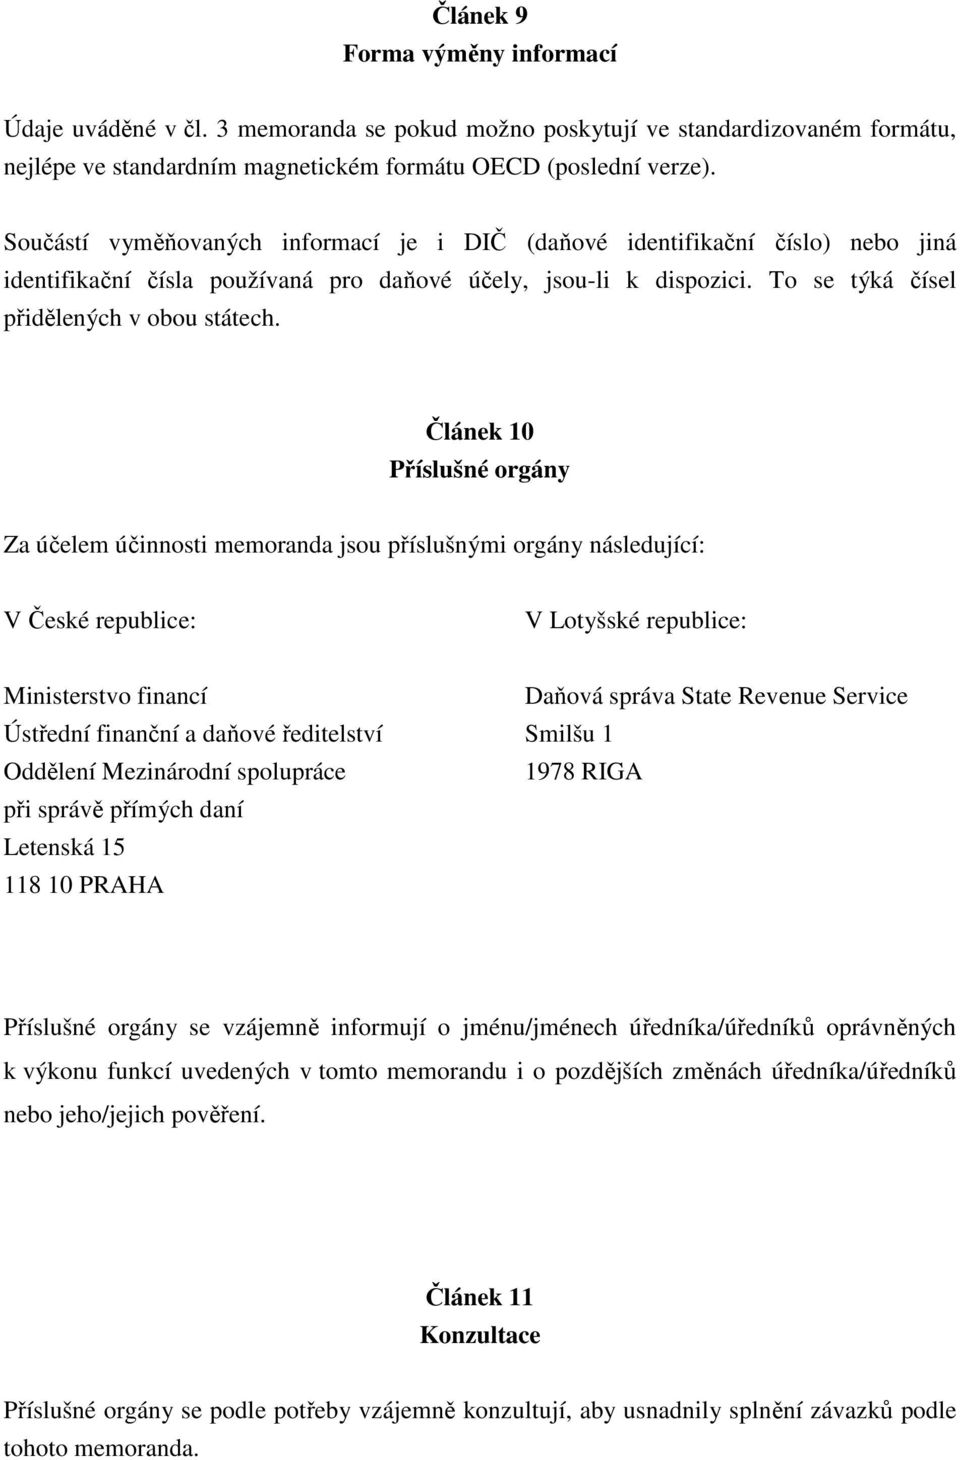 Článek 10 Příslušné orgány Za účelem účinnosti memoranda jsou příslušnými orgány následující: V České republice: V Lotyšské republice: Ministerstvo financí Daňová správa State Revenue Service